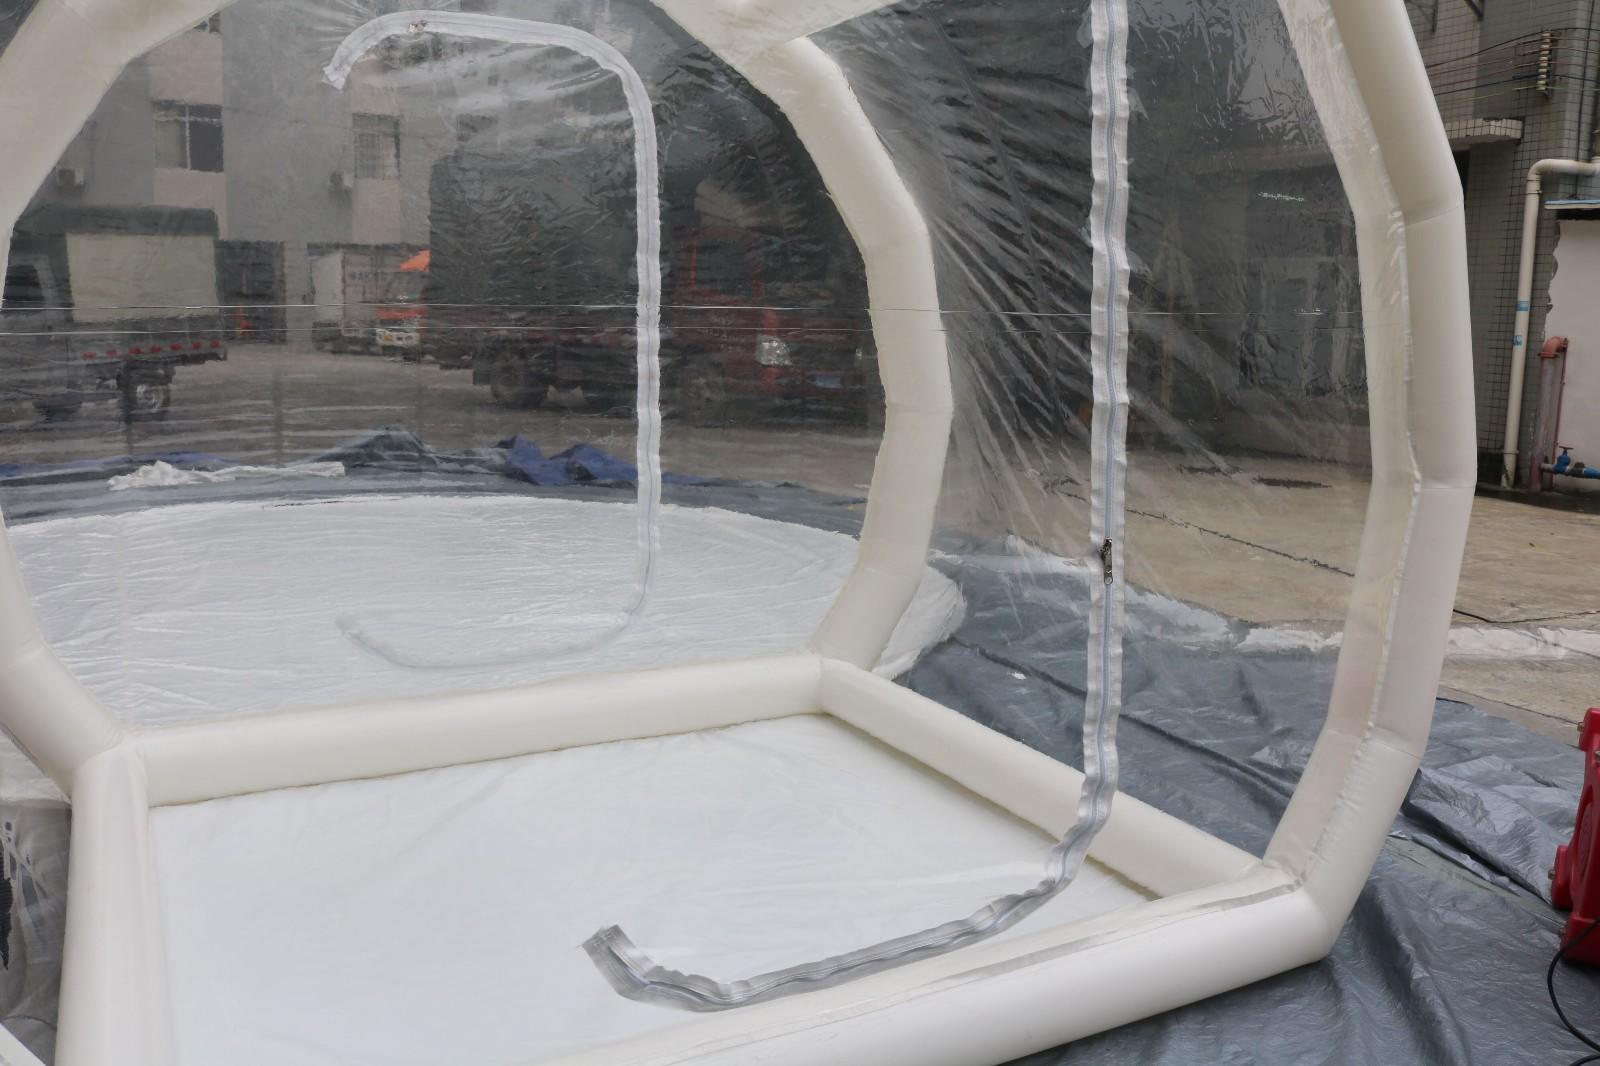 JOY inflatable bridge bubble tent manufacturer supplier for kids